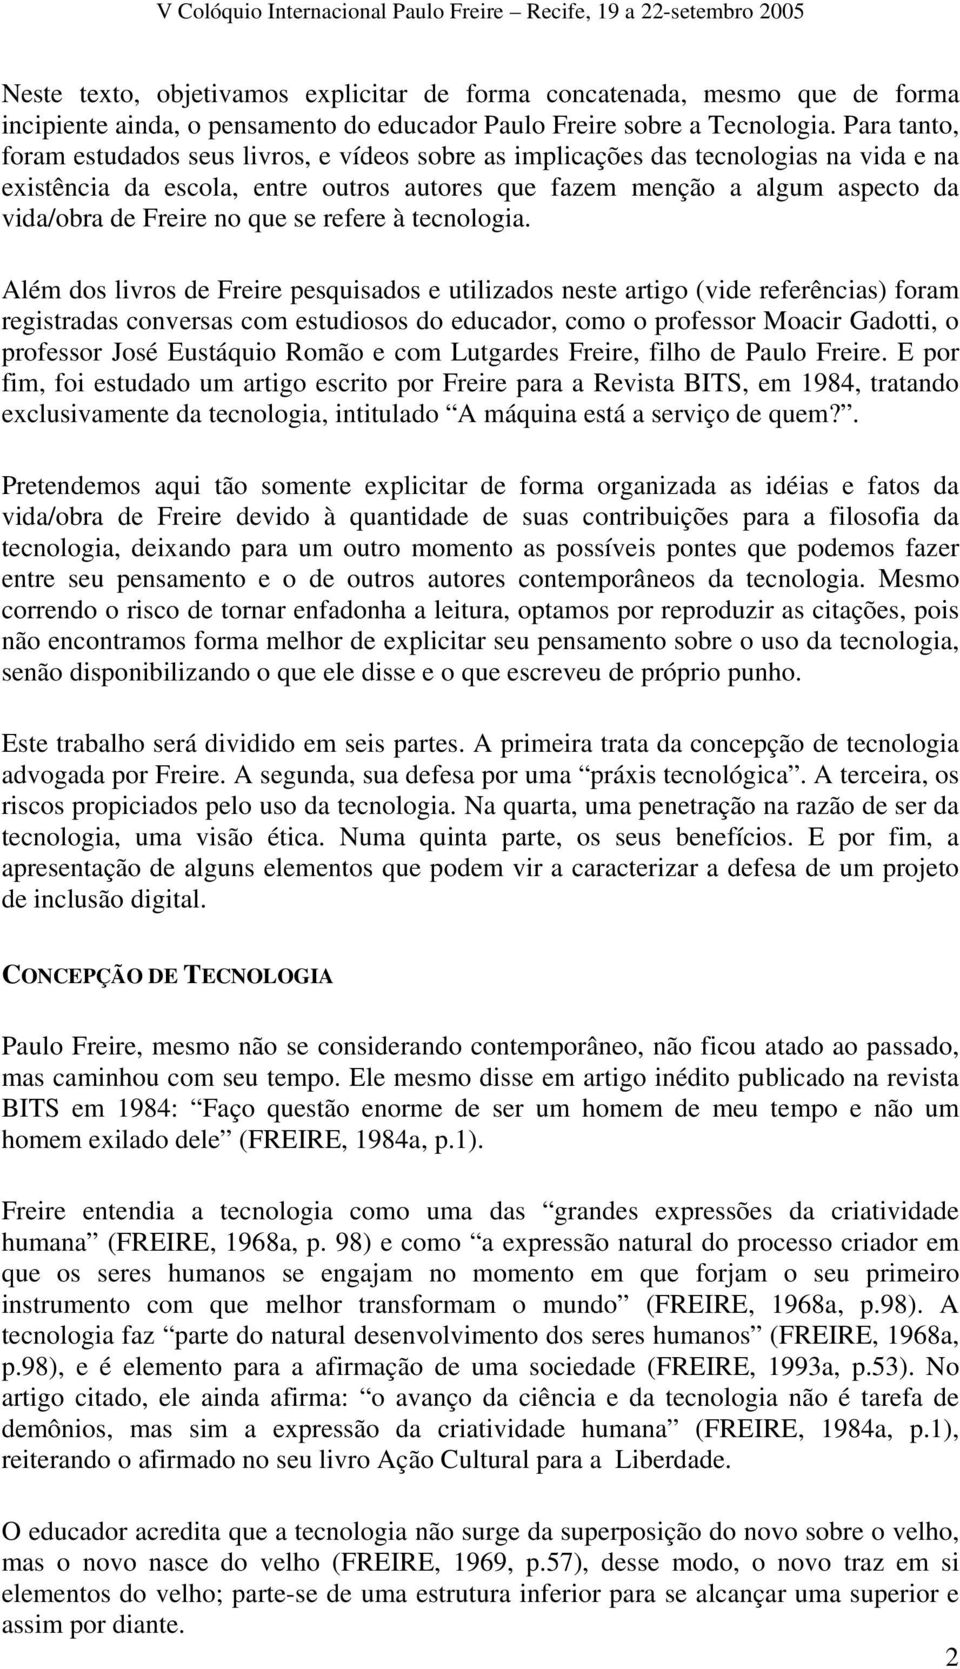 O Pensamento De Paulo Freire Sobre A Tecnologia Traçando Novas